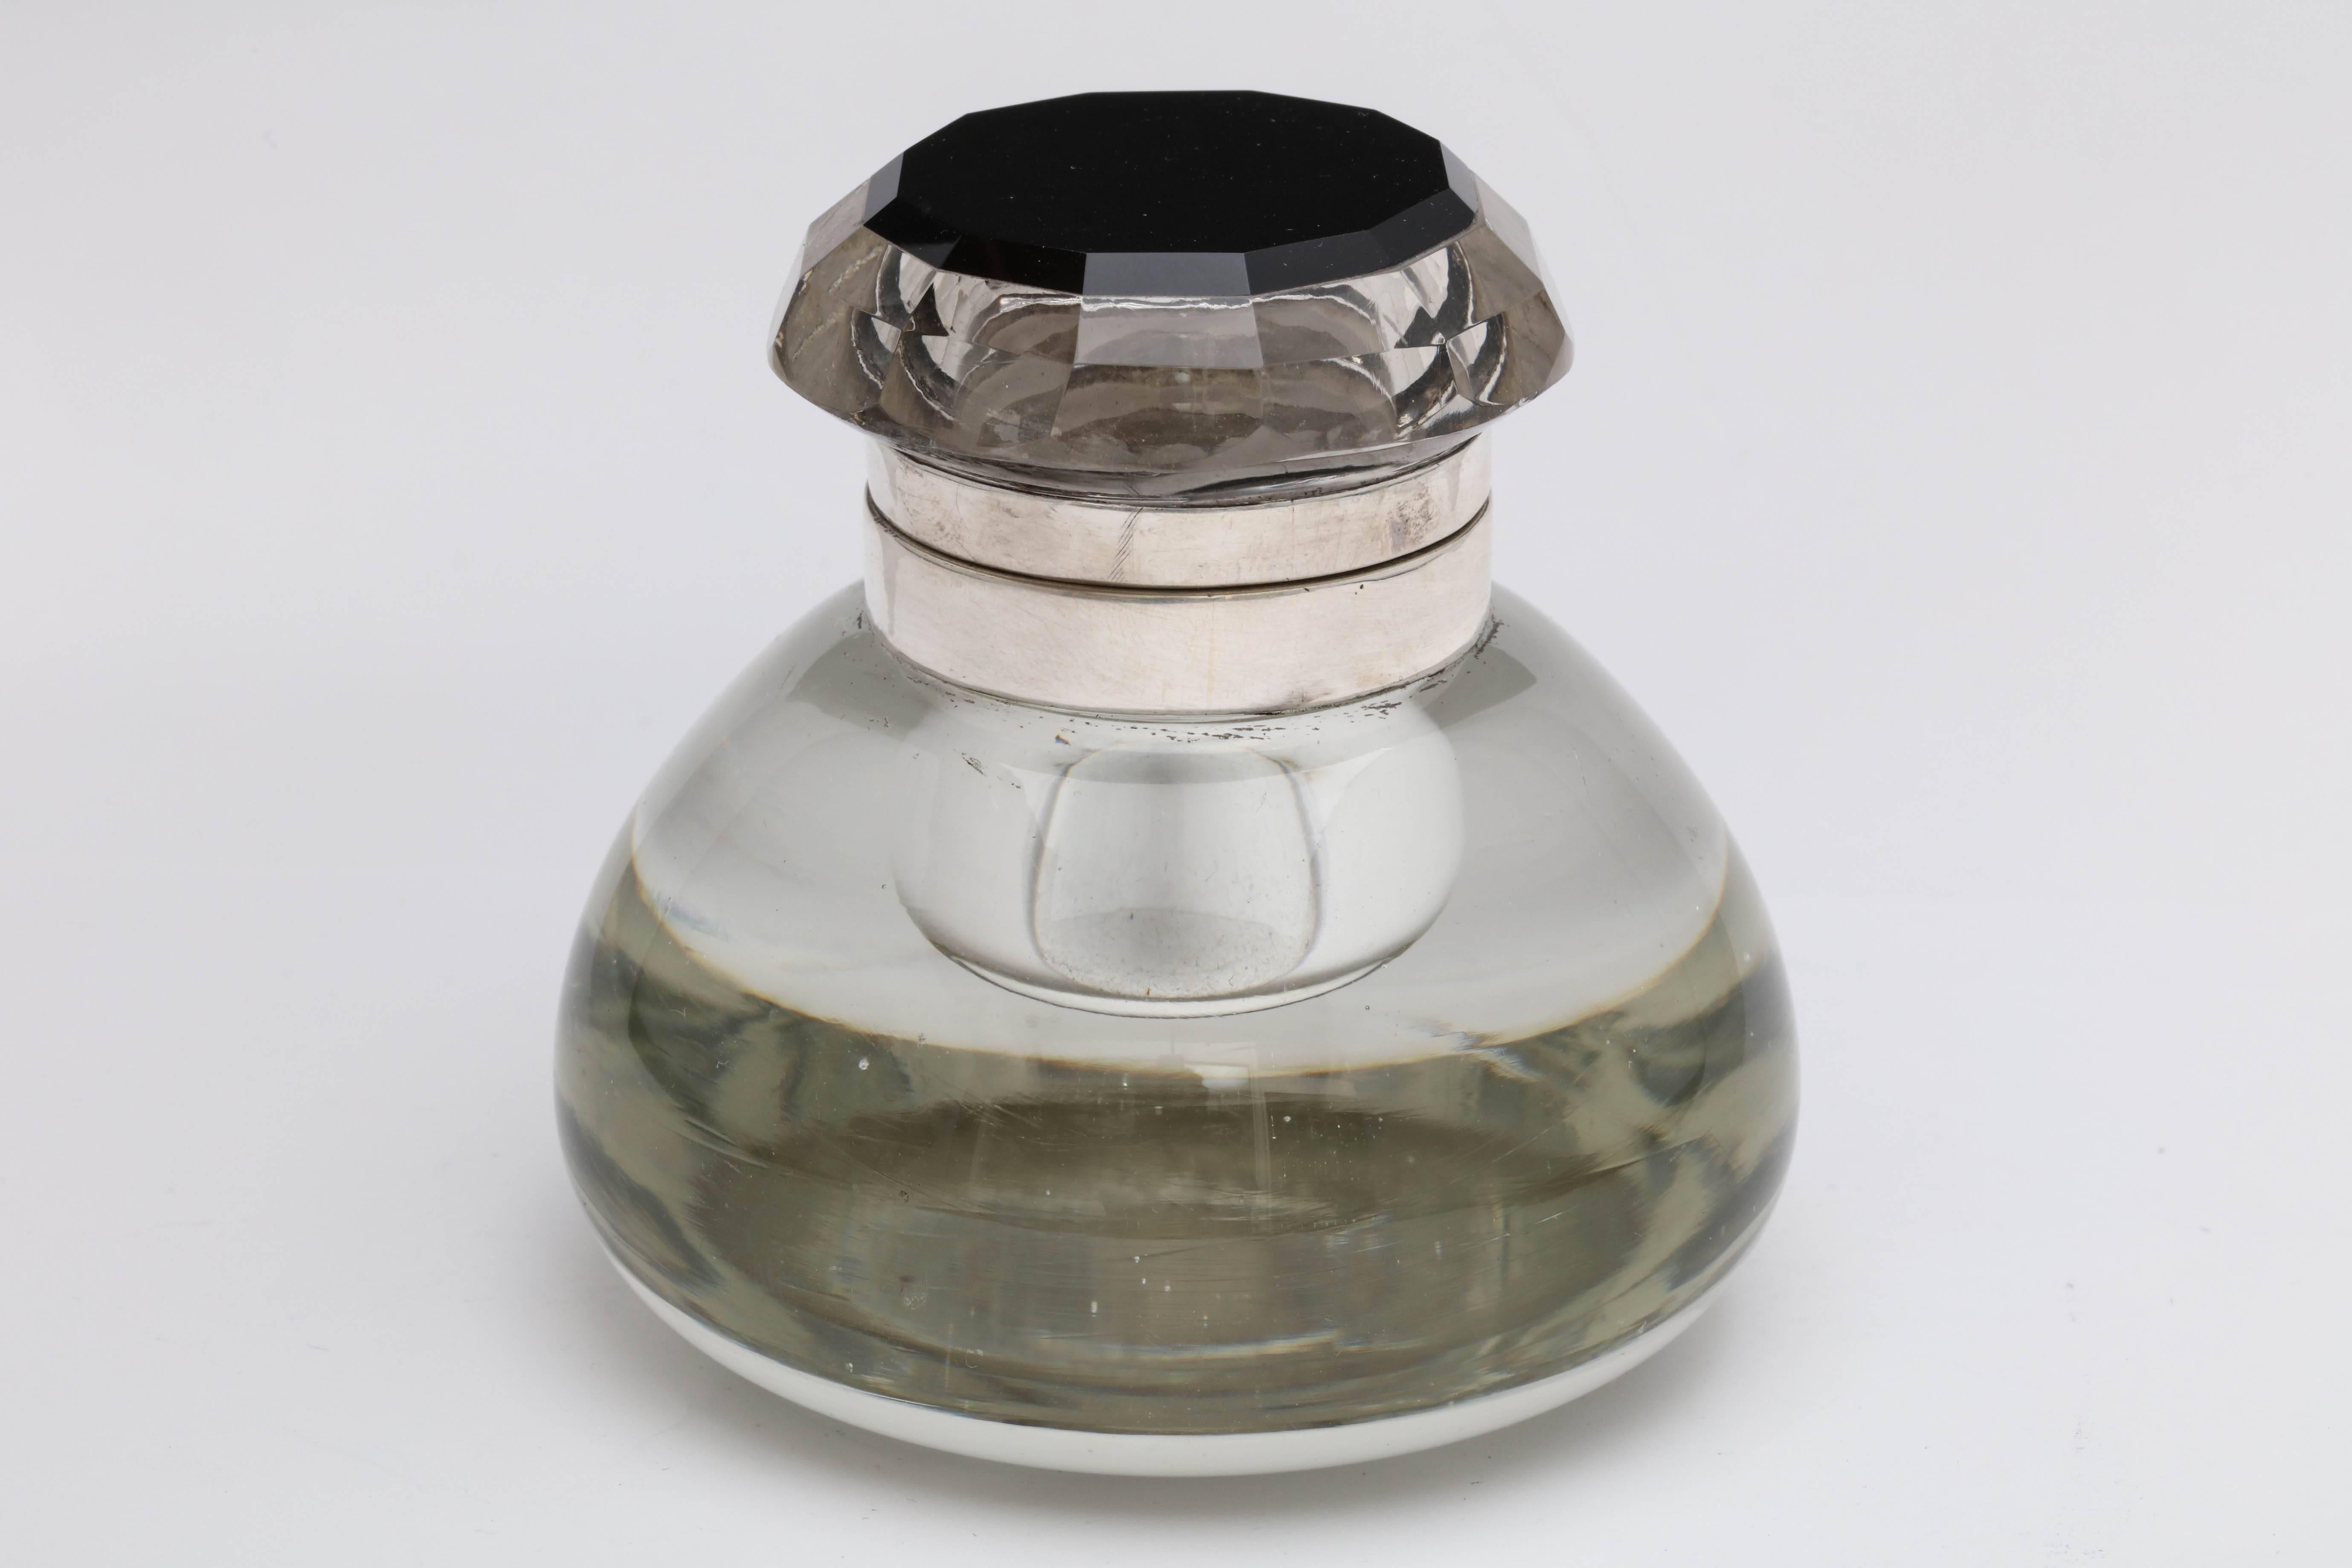 Ungewöhnliches Kristalltintenfass mit Scharnier aus Sterlingsilber und schwarzem Onyx, amerikanisch, ca. 1920-1930er Jahre. der 12-eckige, facettierte Deckel aus klarem Kristall wird von einem 12-eckigen Stück aus schwarzem Onyx gehalten. Die